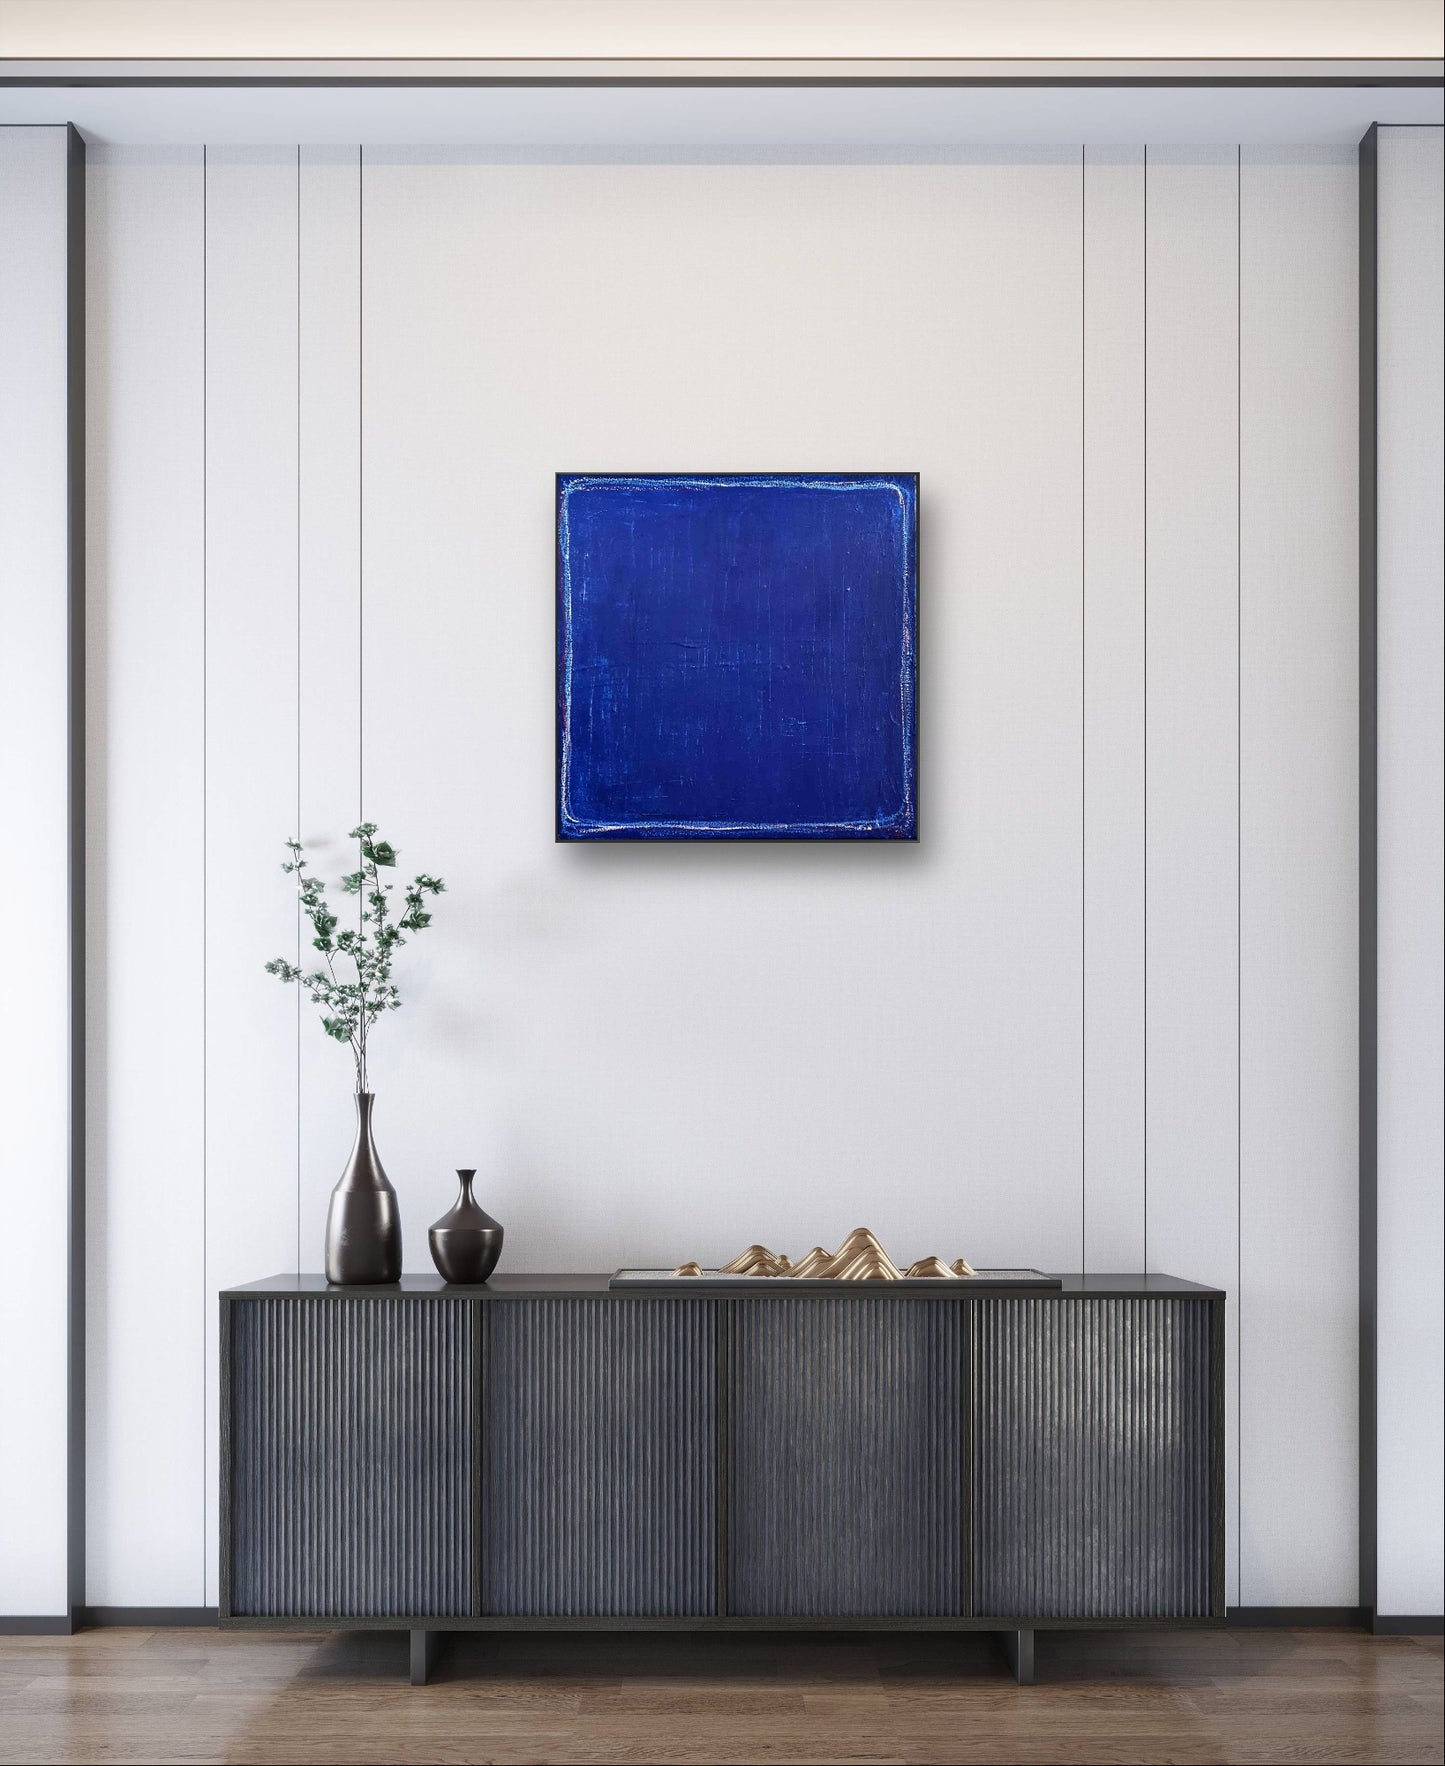 Auftragskunst, abstrakte Bilder, Blaues Bild 60 x 60 cm / Elbtunnel,blaue-bilder-minimalistisch, abstrakte Bilder kaufen ,